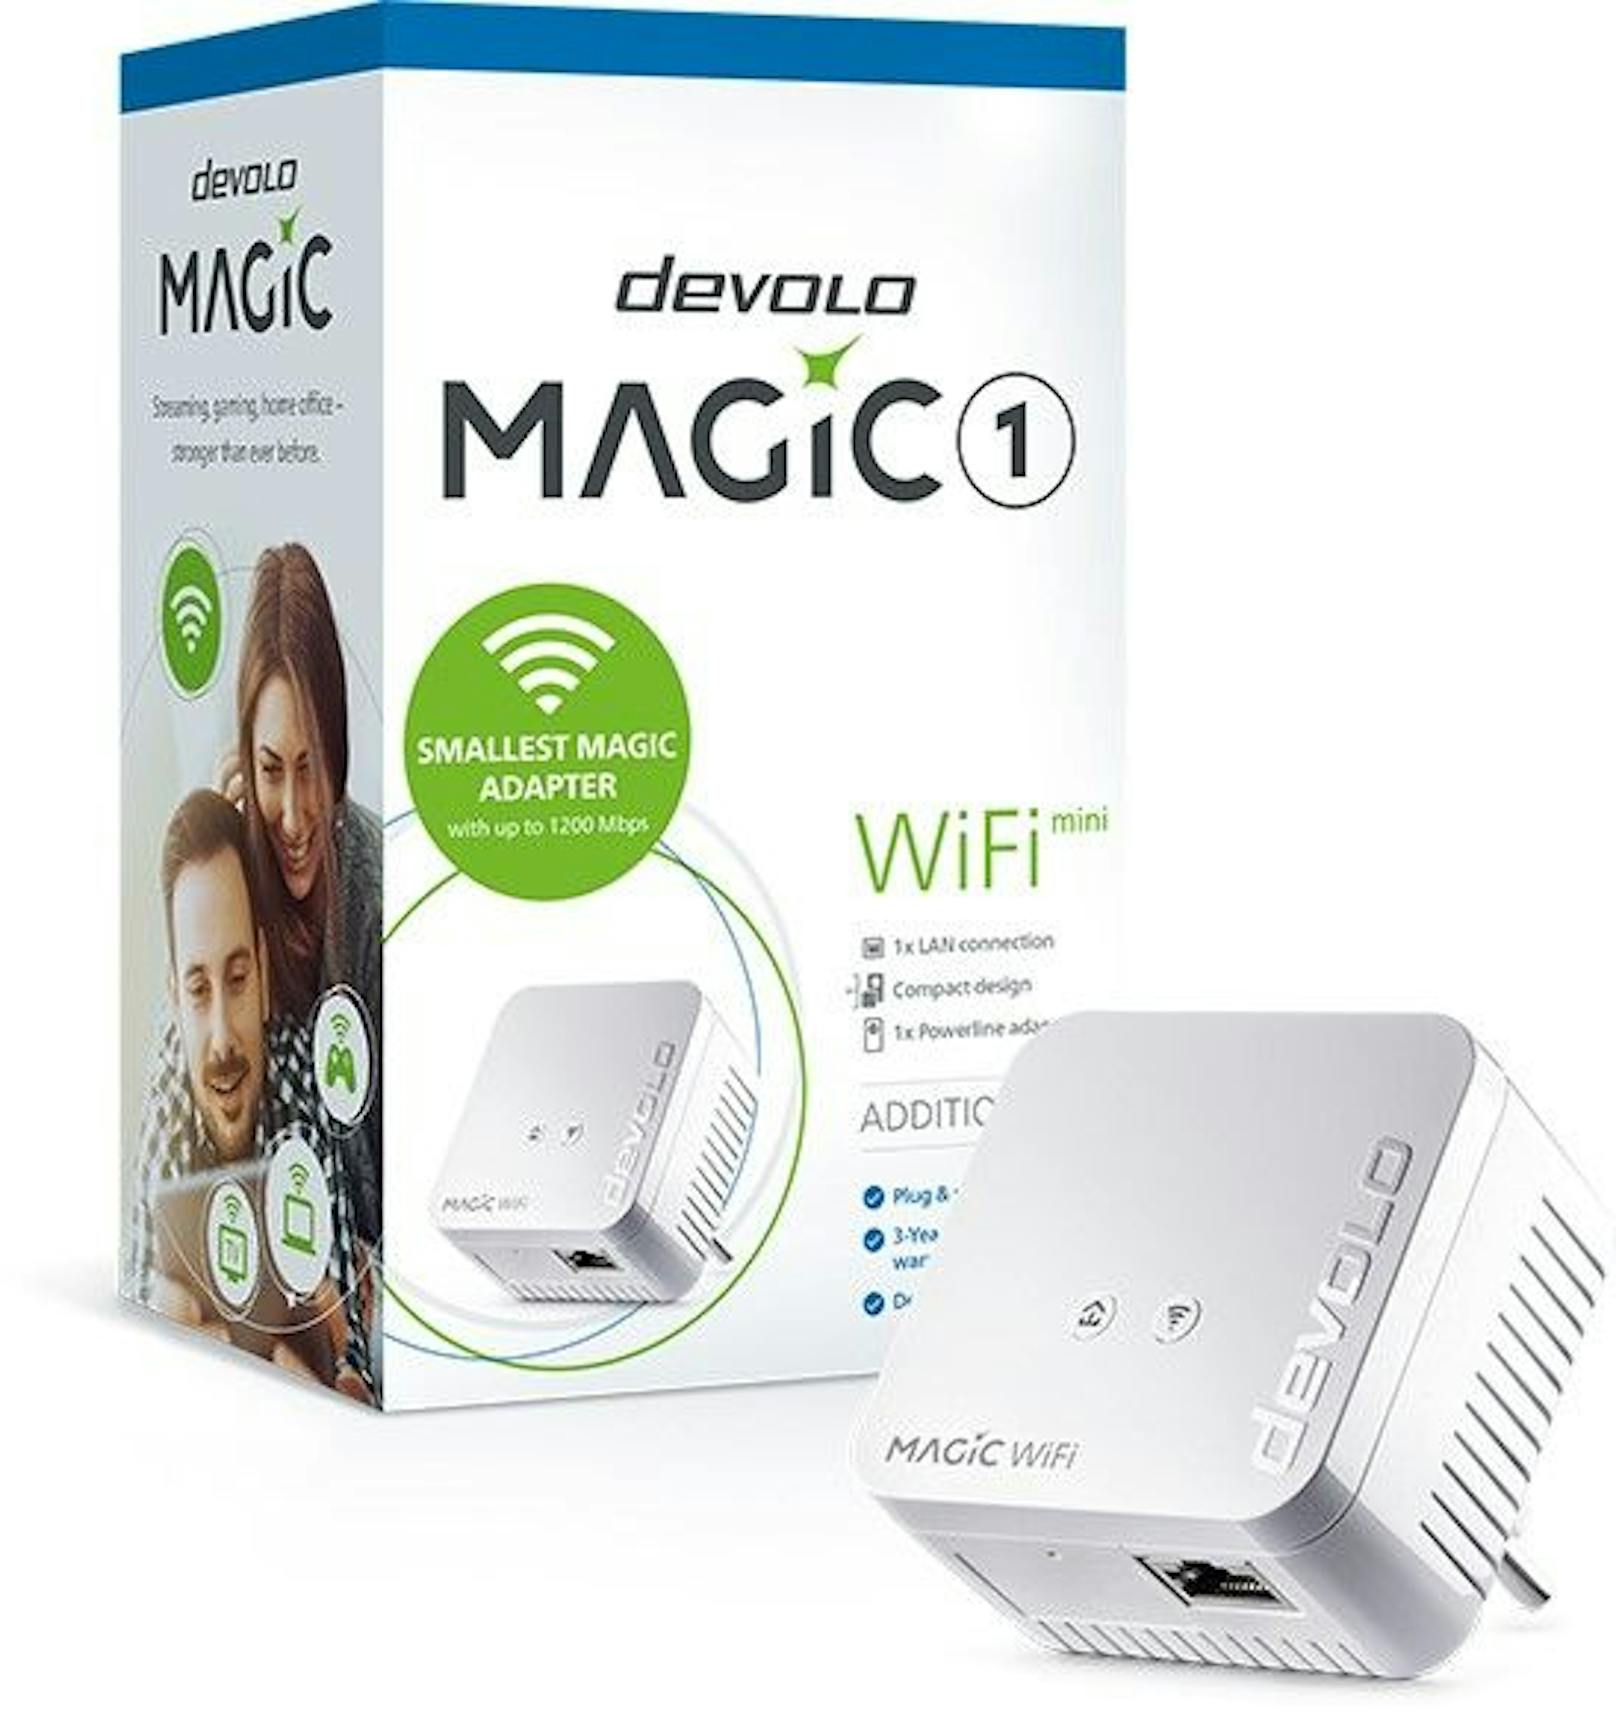 devolo Magic 1 WiFi: der Allrounder.